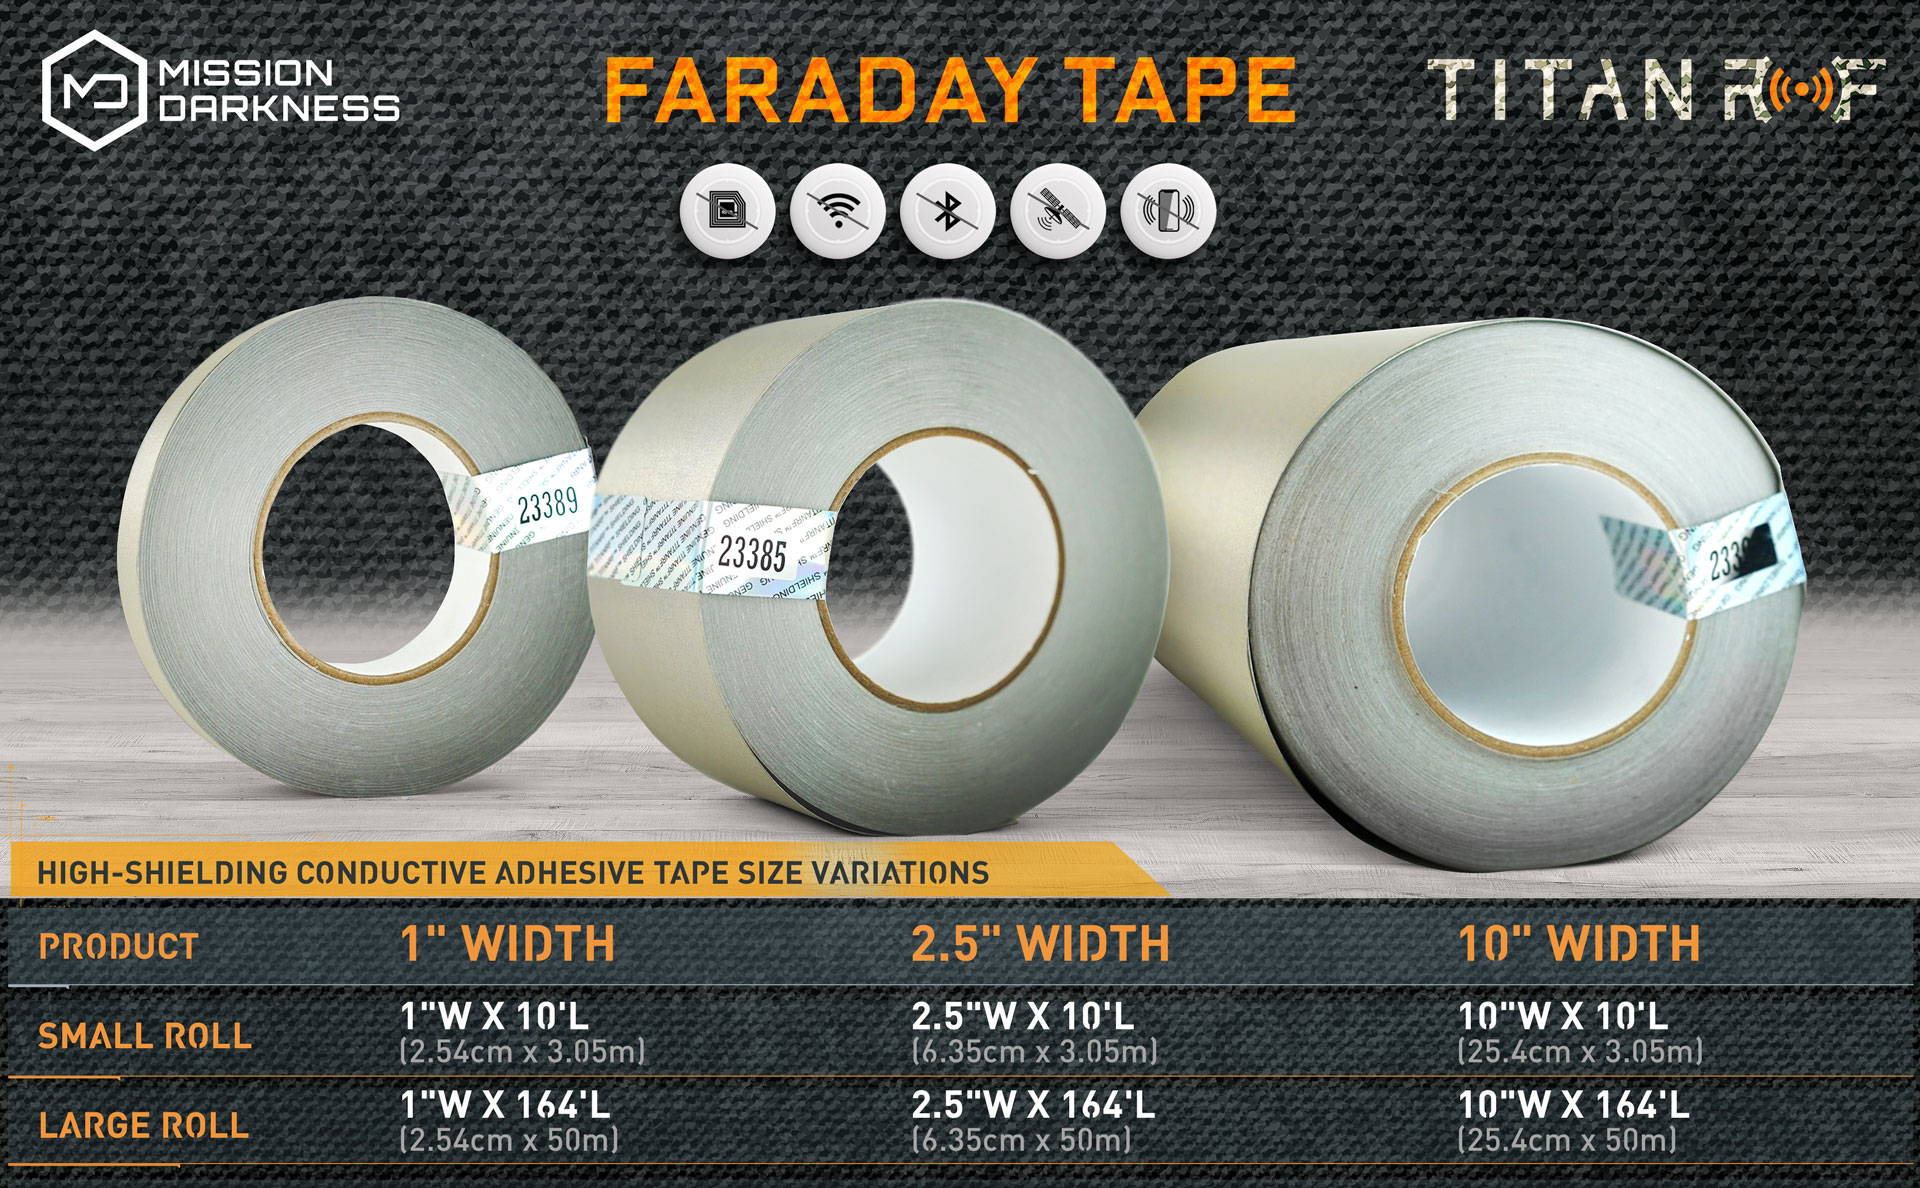 Mission Darkness TitanRF Faraday Fabric - Standard